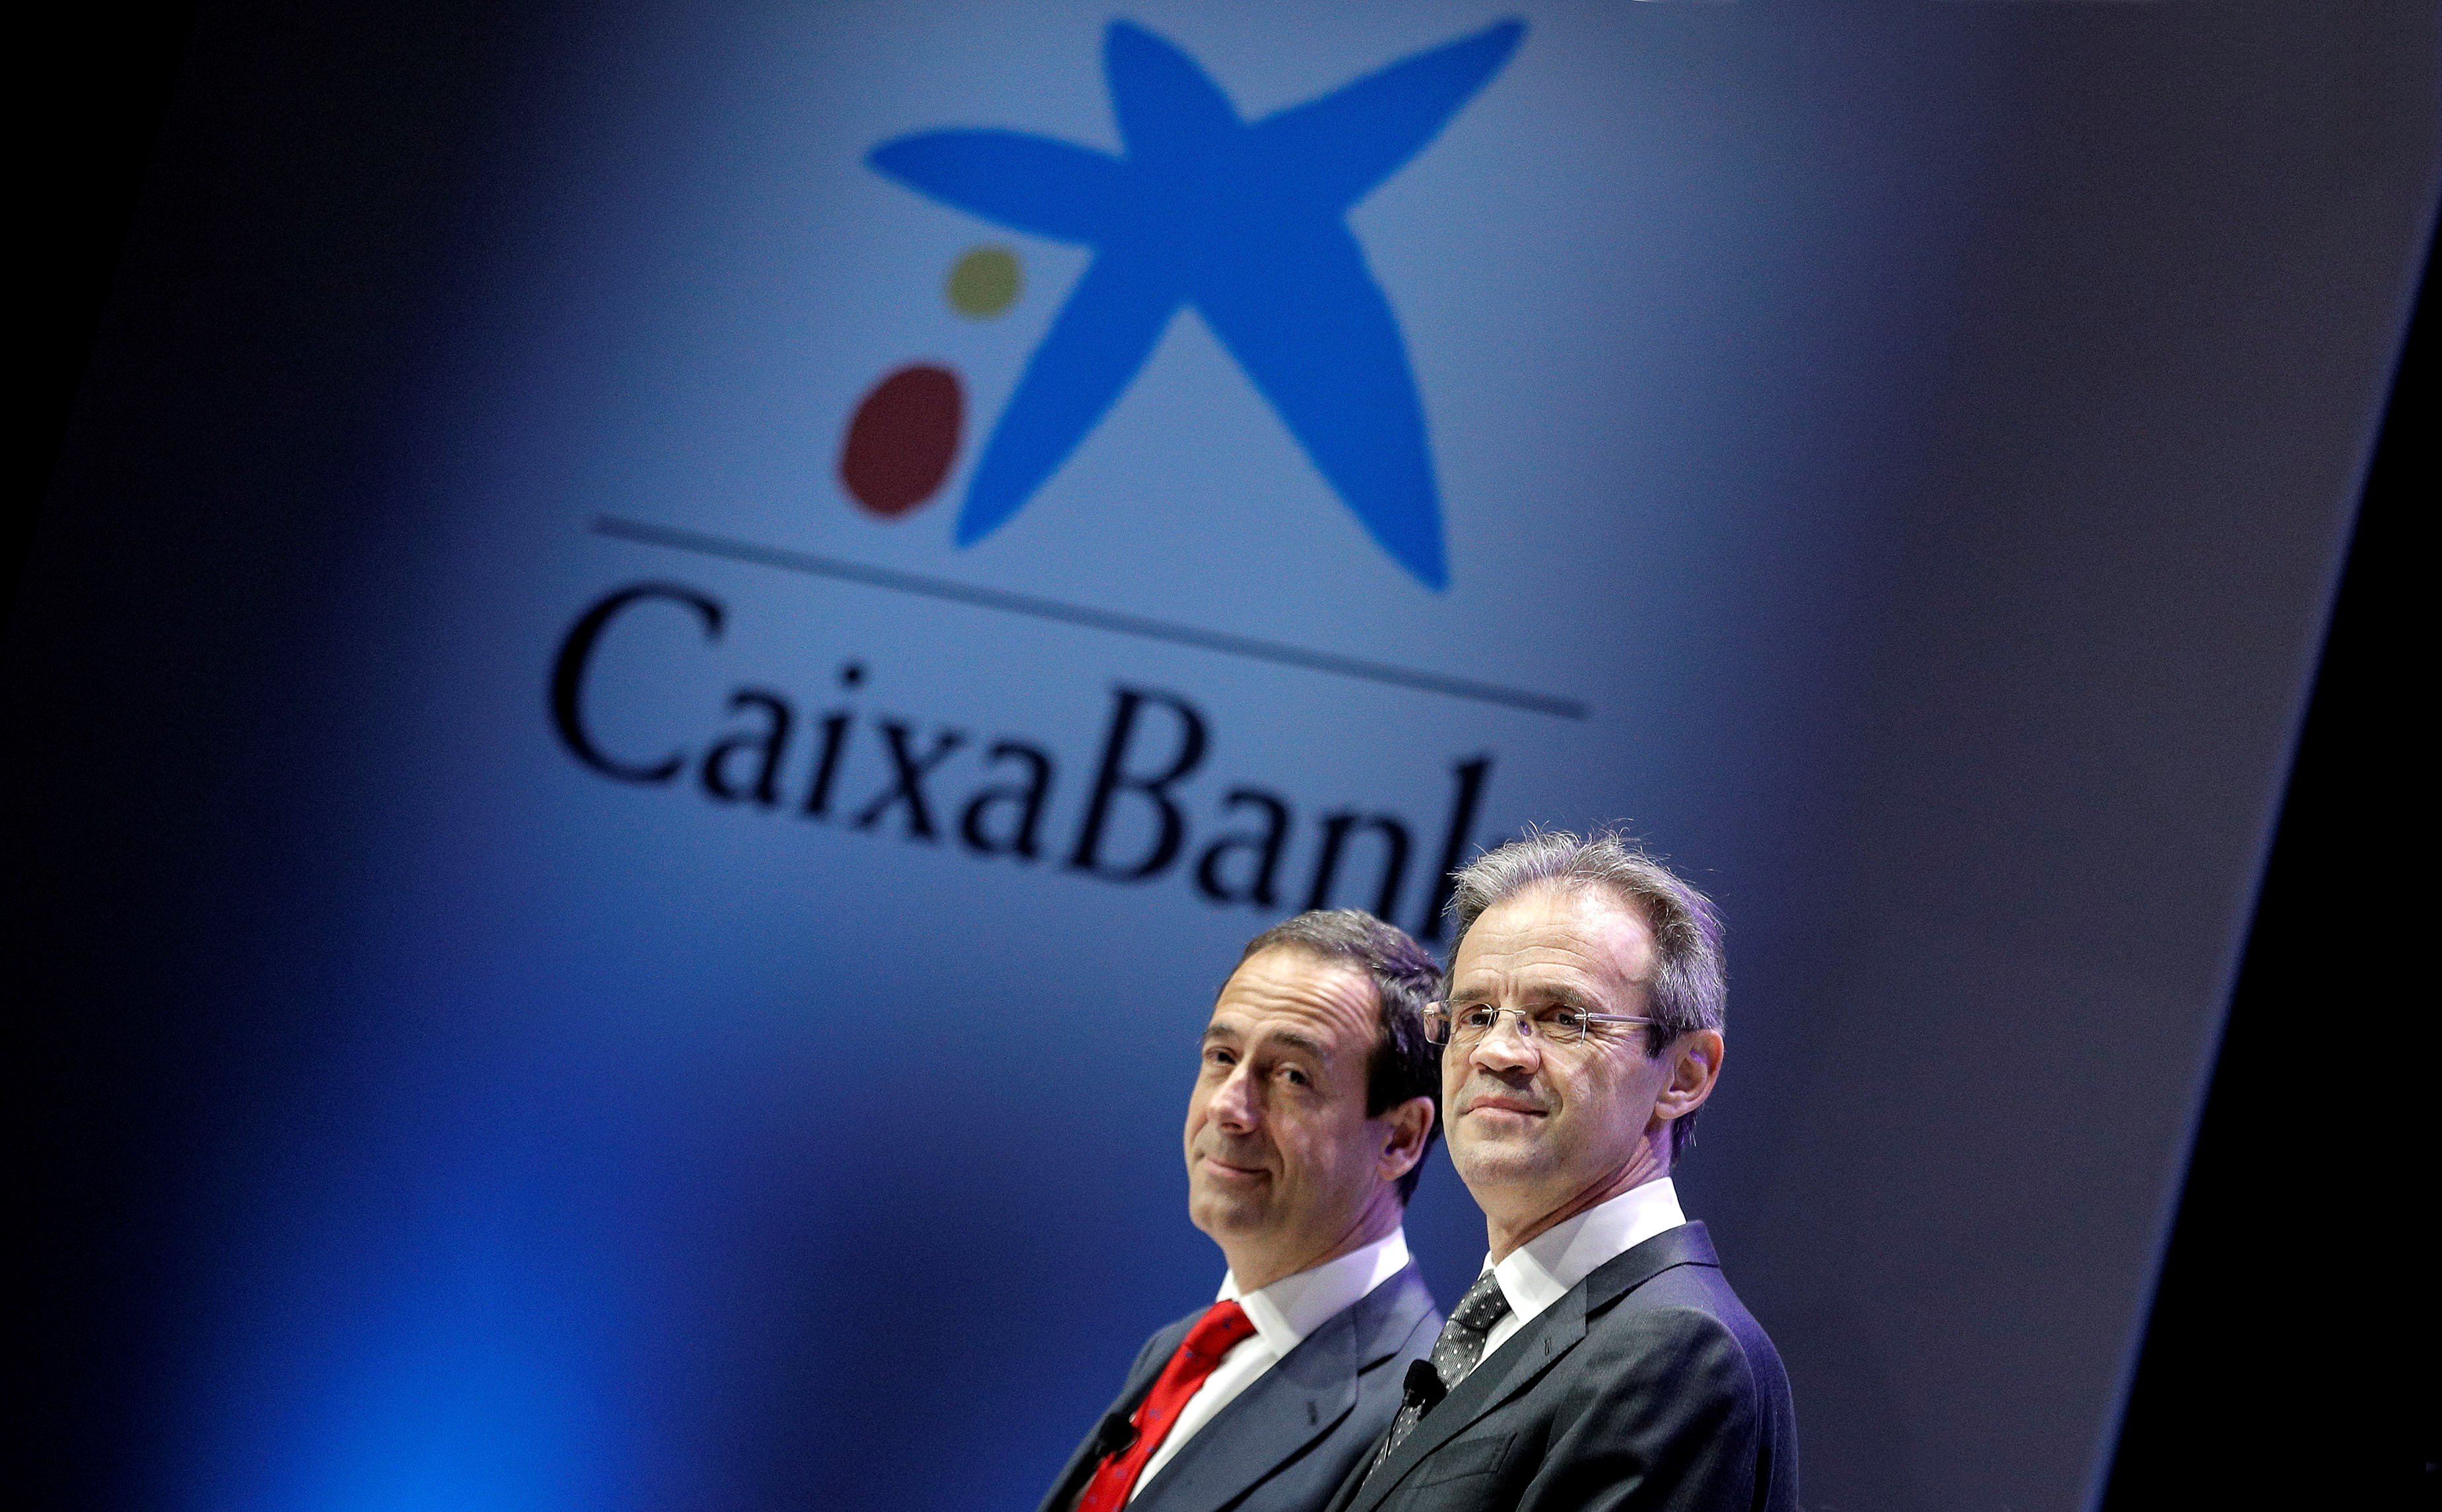 El presidente de CaixaBank, Jordi Gual (dcha), y el consejero delegado, Gonzalo Gortázar, al comienzo de la junta general de accionistas celebrada en Valencia